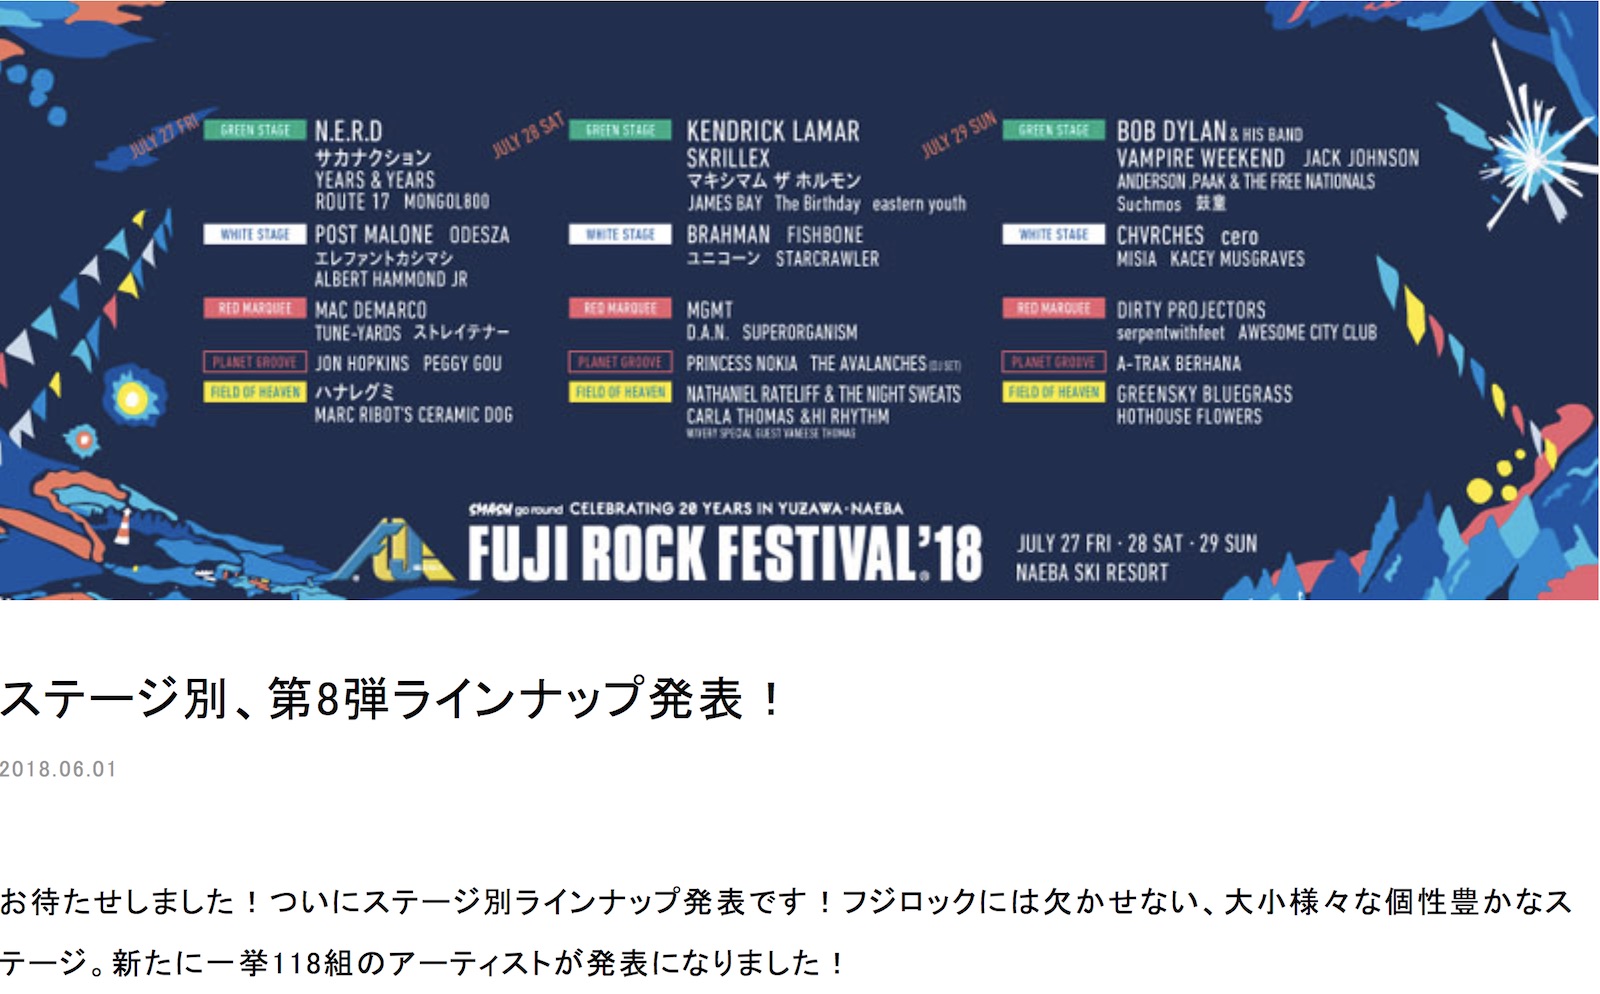 20180727~29Salam DJ@Fuji Rock Festival:Blue Galaxy